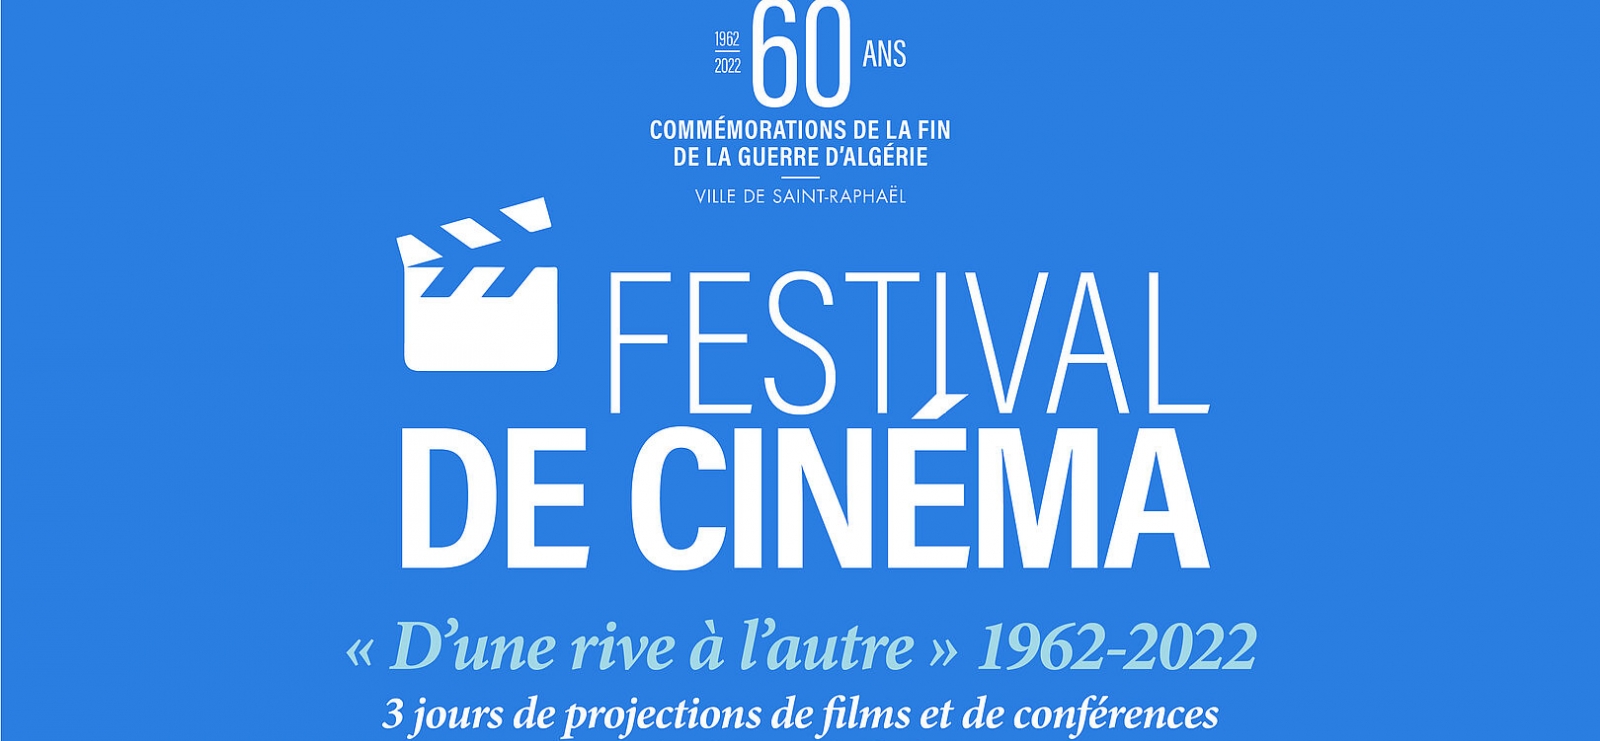 60 ans commémoration de la fin de la guerre d’algerie estival du cinema d’une rive a l’autre 1962/2022